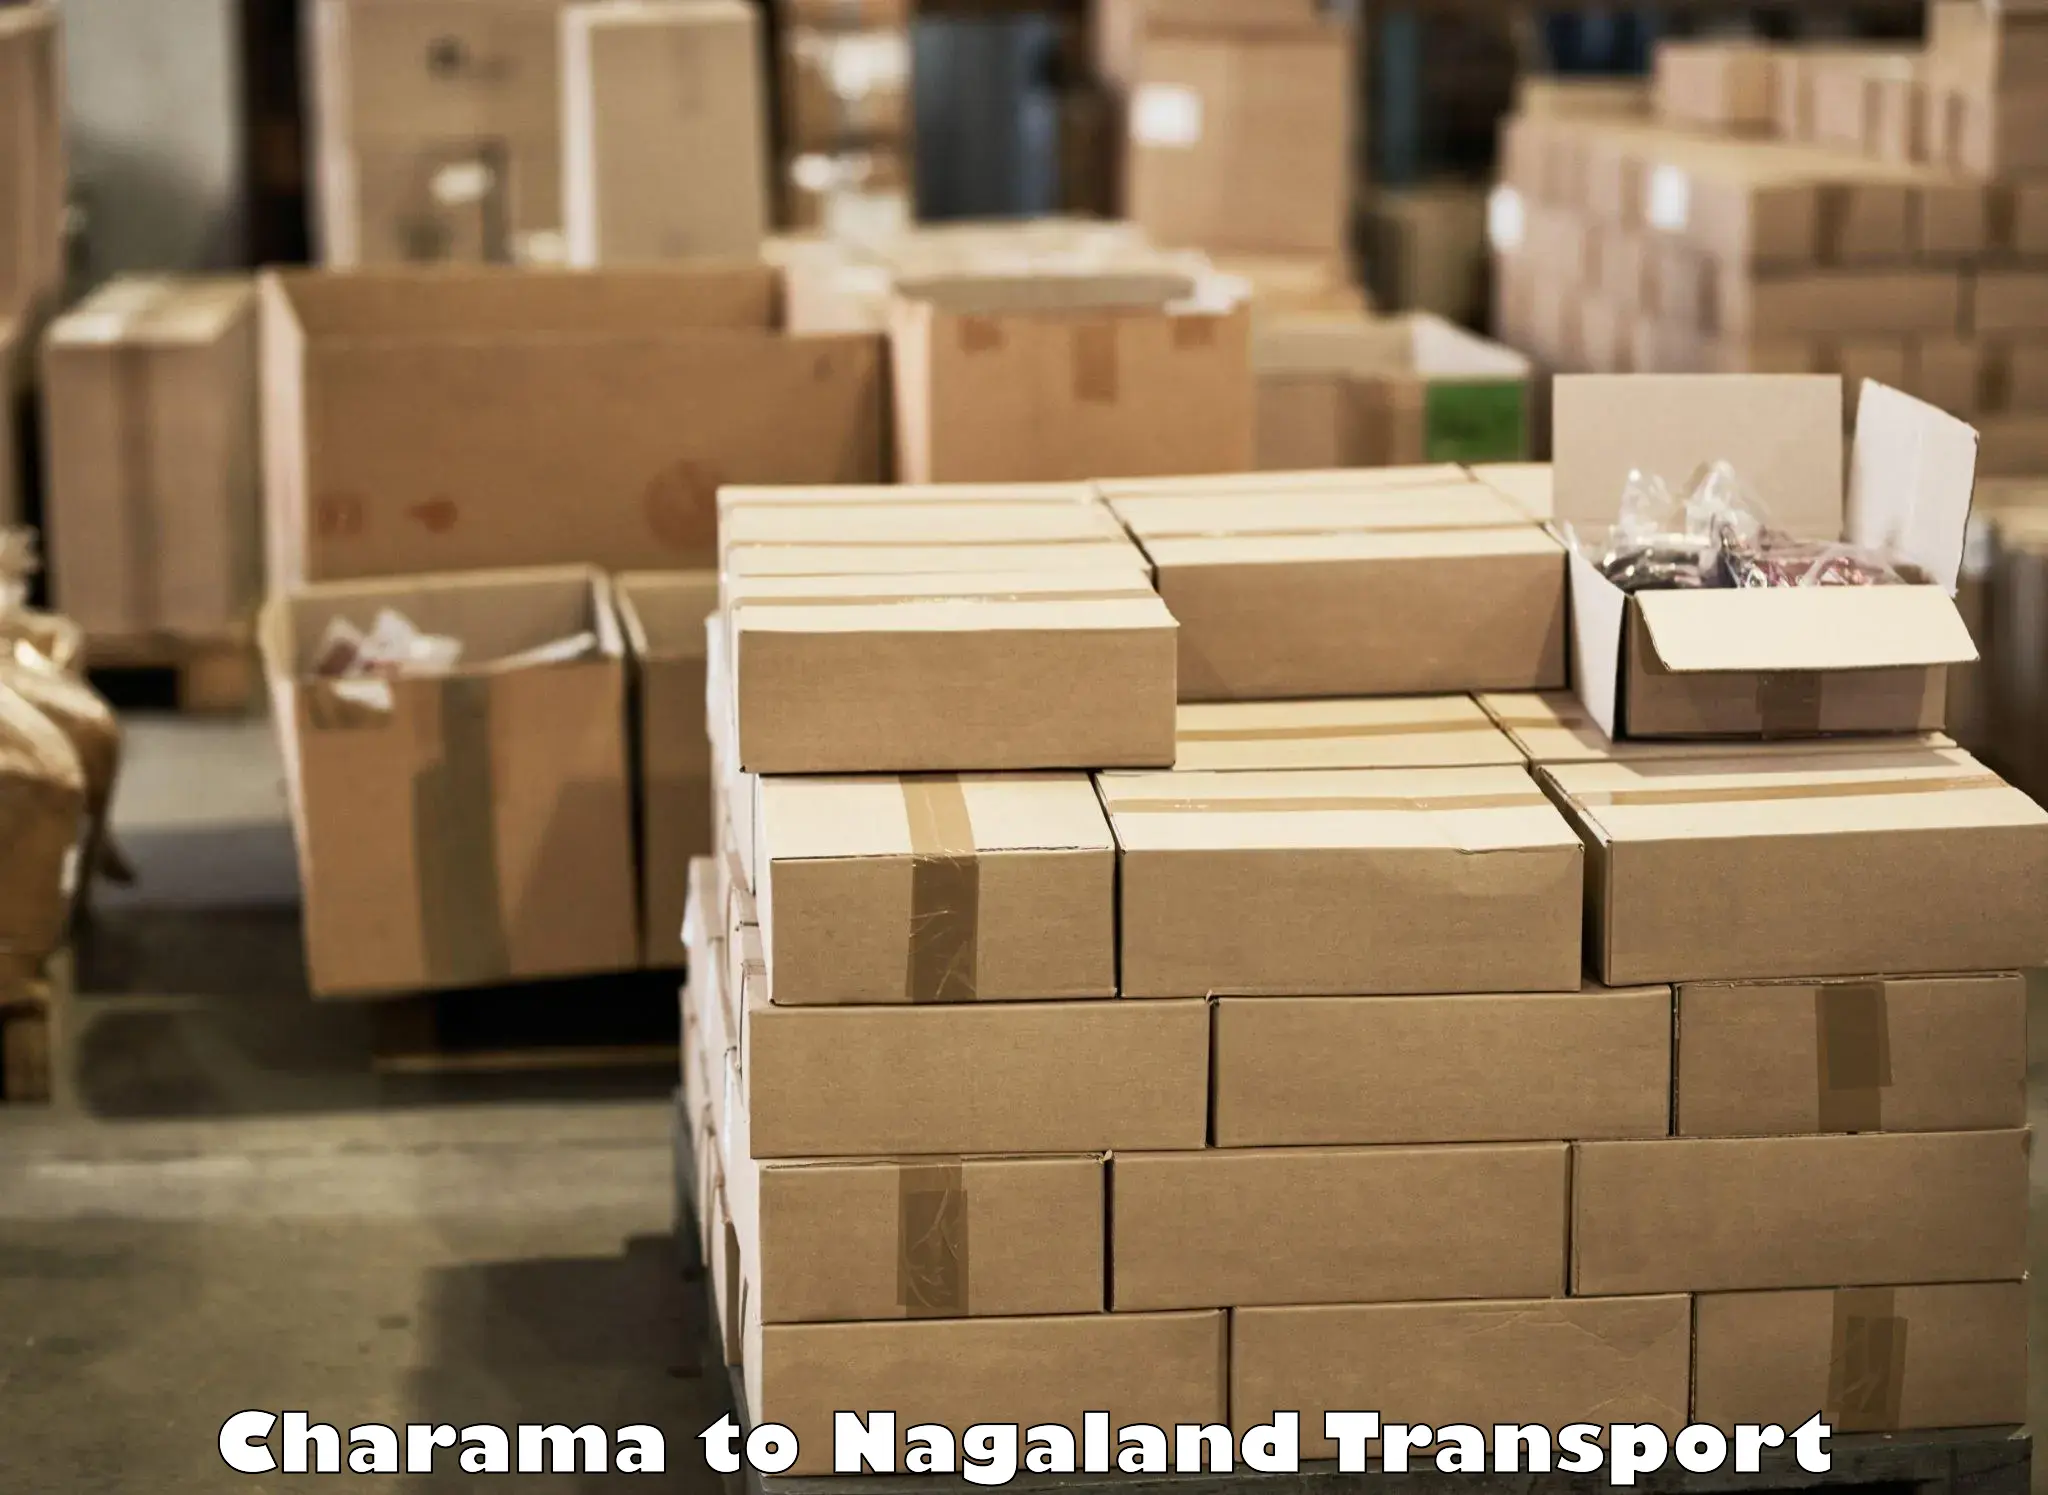 Shipping services Charama to NIT Nagaland